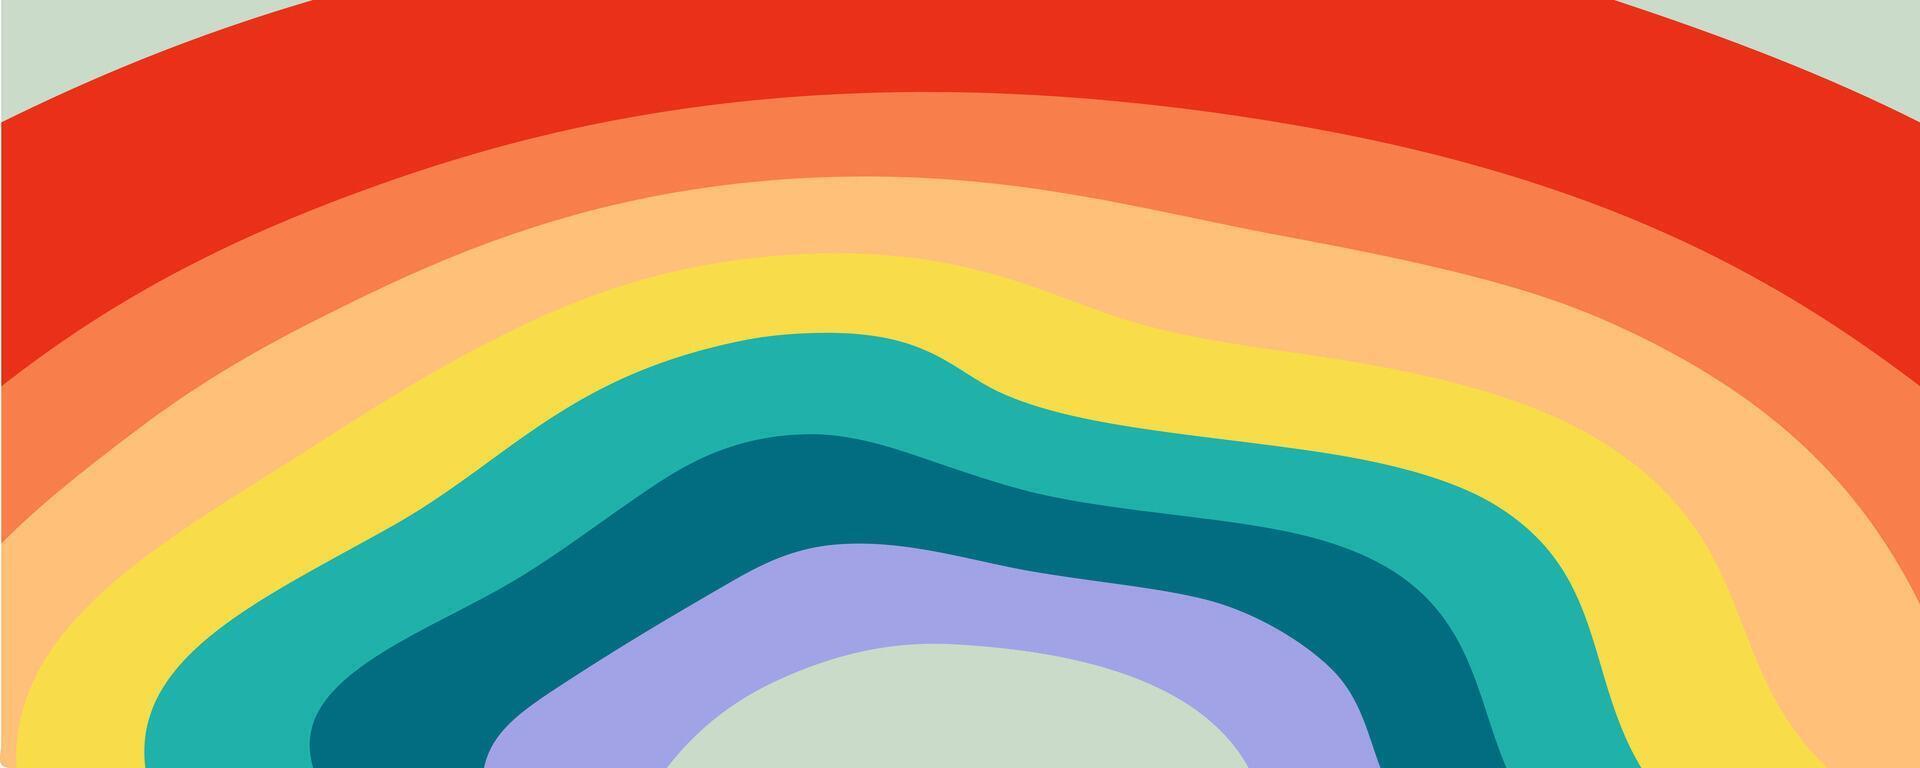 Regenbogen Farben Spektrum abstrakt wellig Hintergrund. perfekt Design zum Poster, Karten, Banner, drucken. Hand gezeichnet Vektor Illustration.